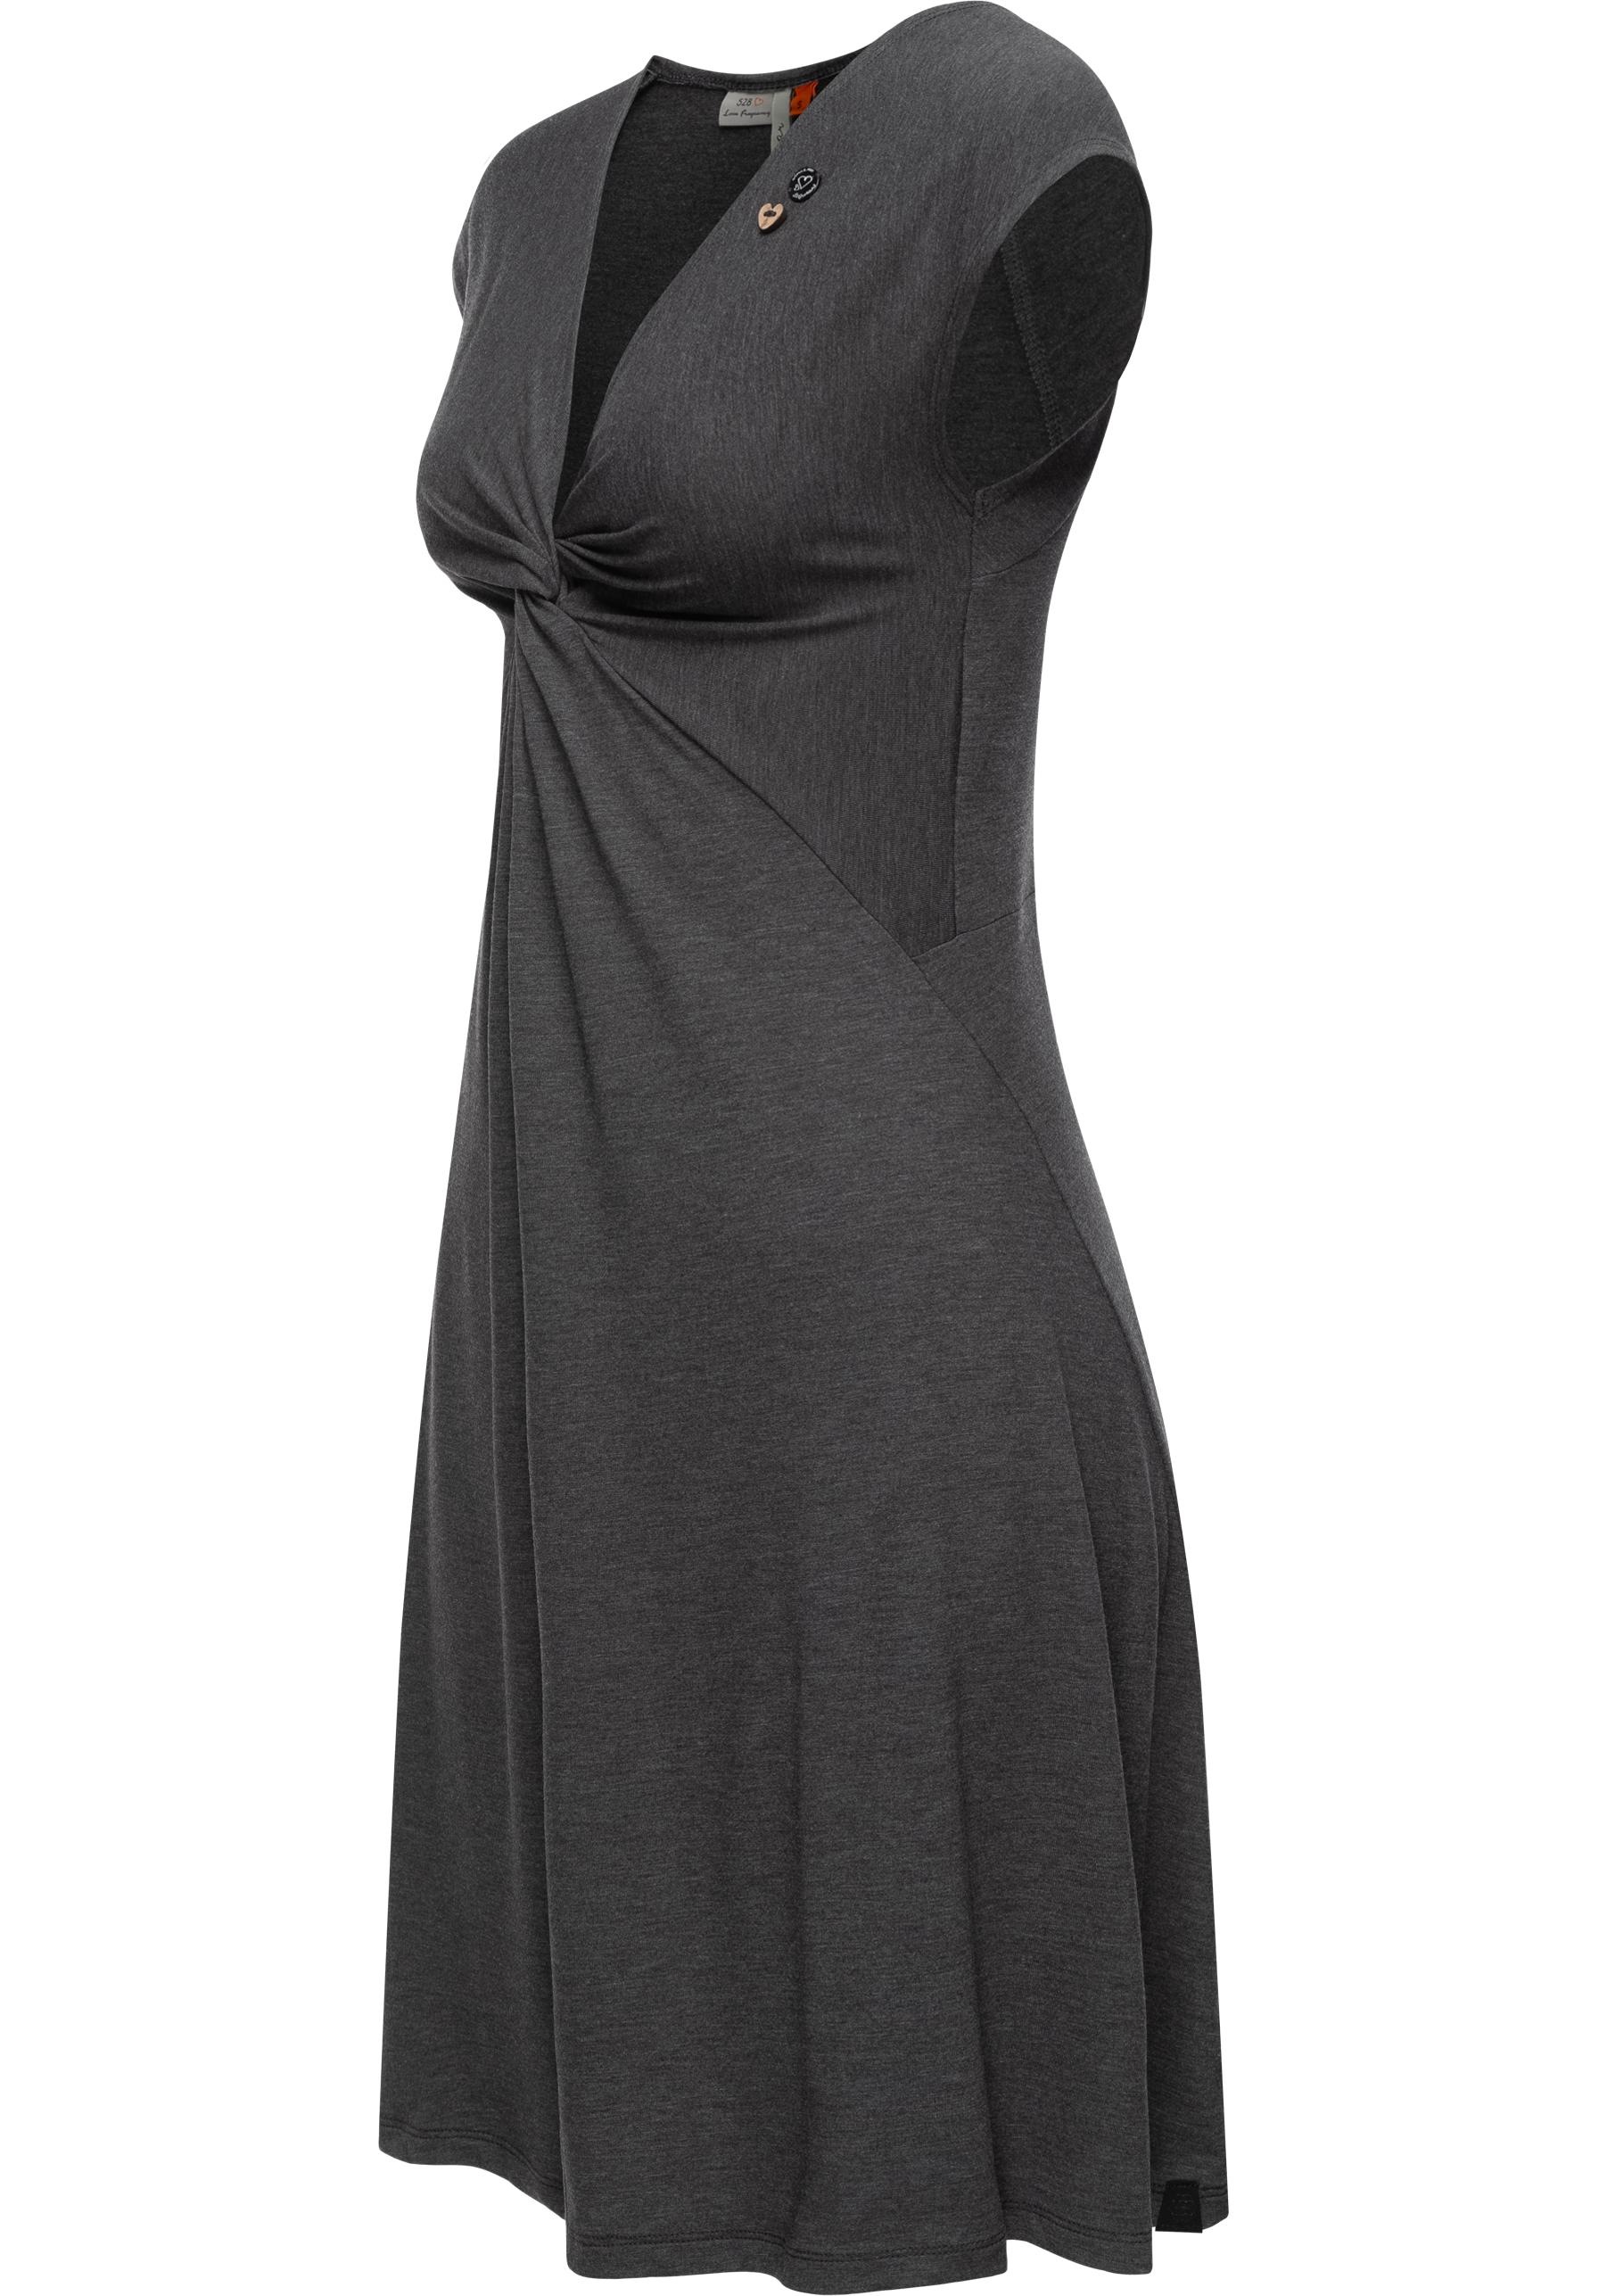 Ragwear Jerseykleid »Comfrey Solid«, stylisches Sommerkleid mit tiefem V-Ausschnitt